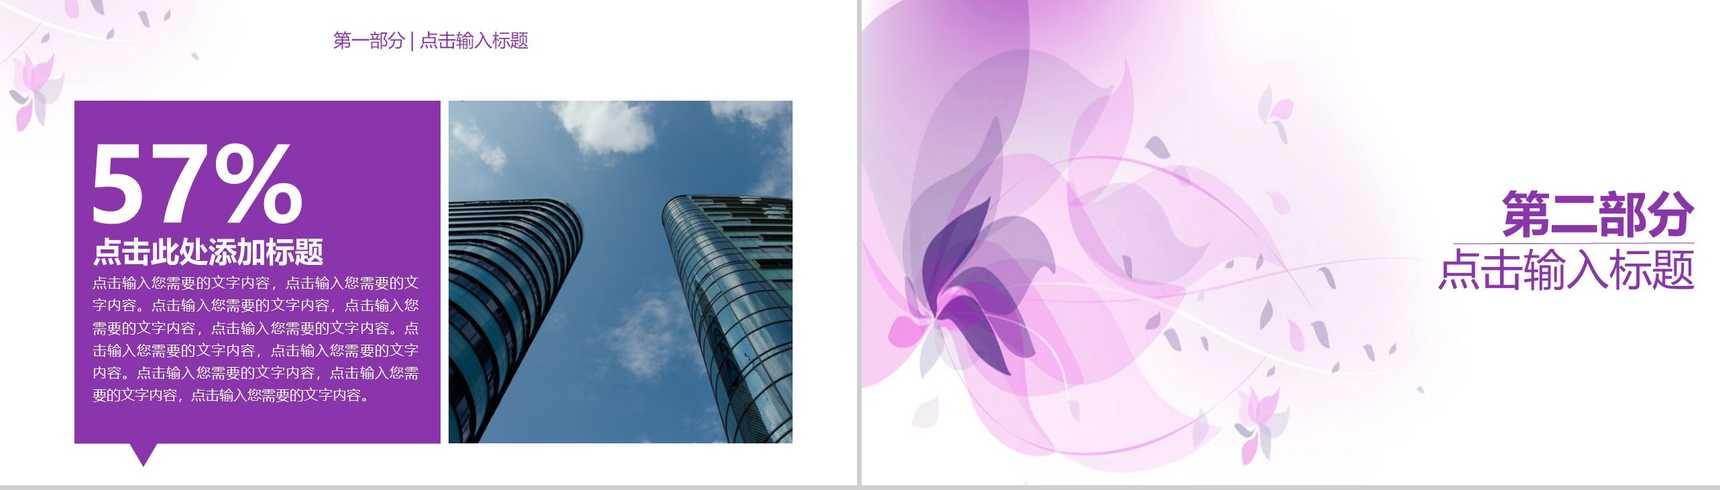 浅紫色简约唯美商务风企业宣传PPT模板-4